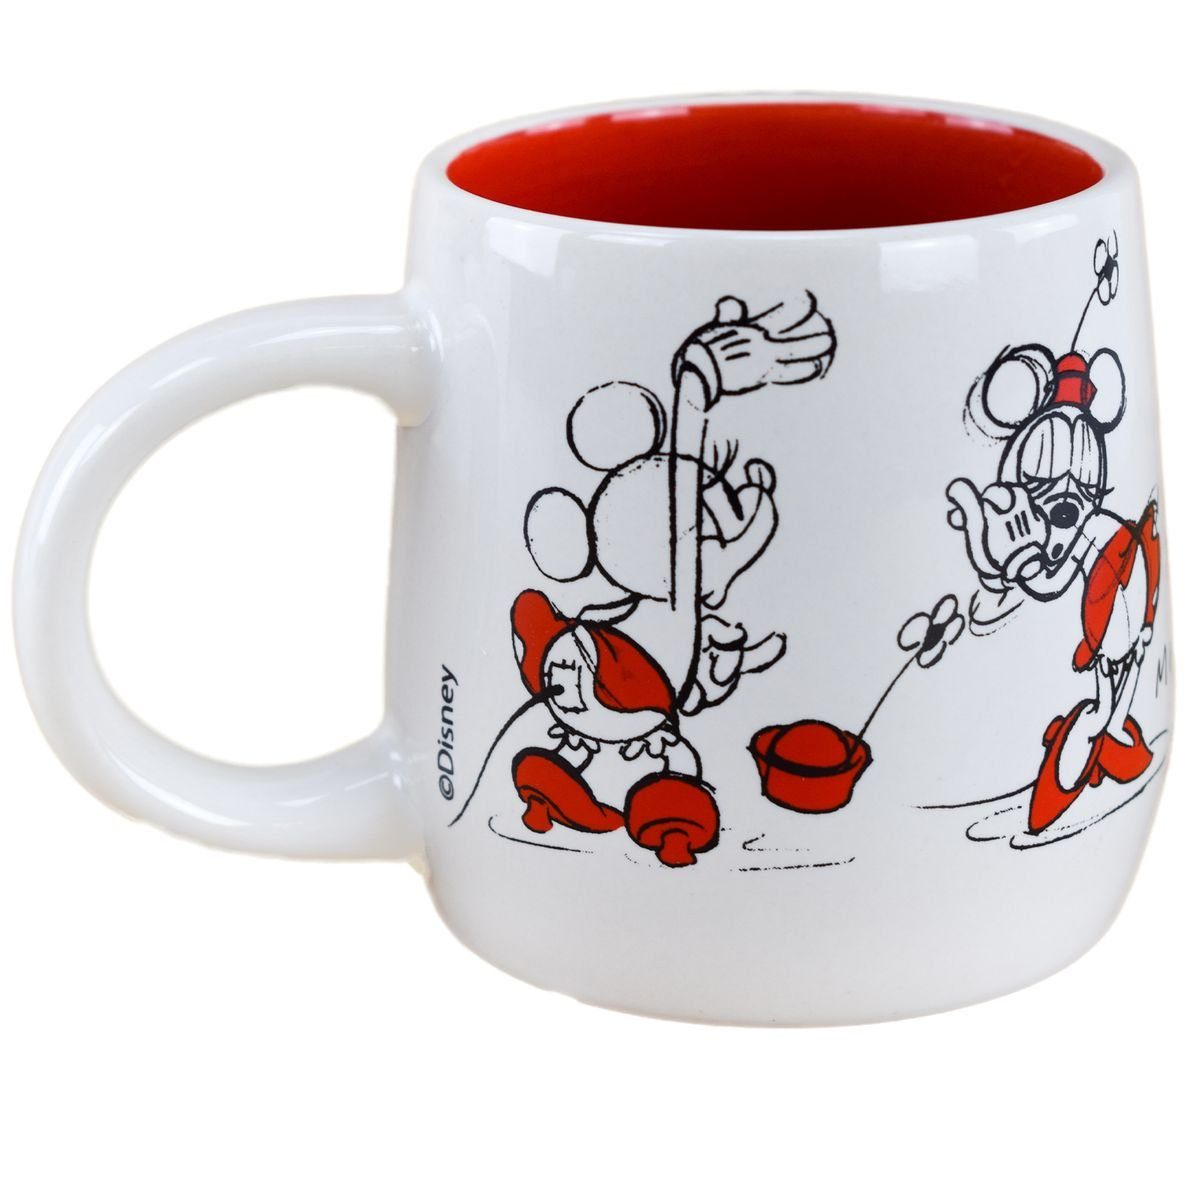 Stor Tasse Disney Minnie Mouse Design 8,7x9 ca. Keramik, als Weiß Skizze cm, / in Rot Kaffeetasse authentisches